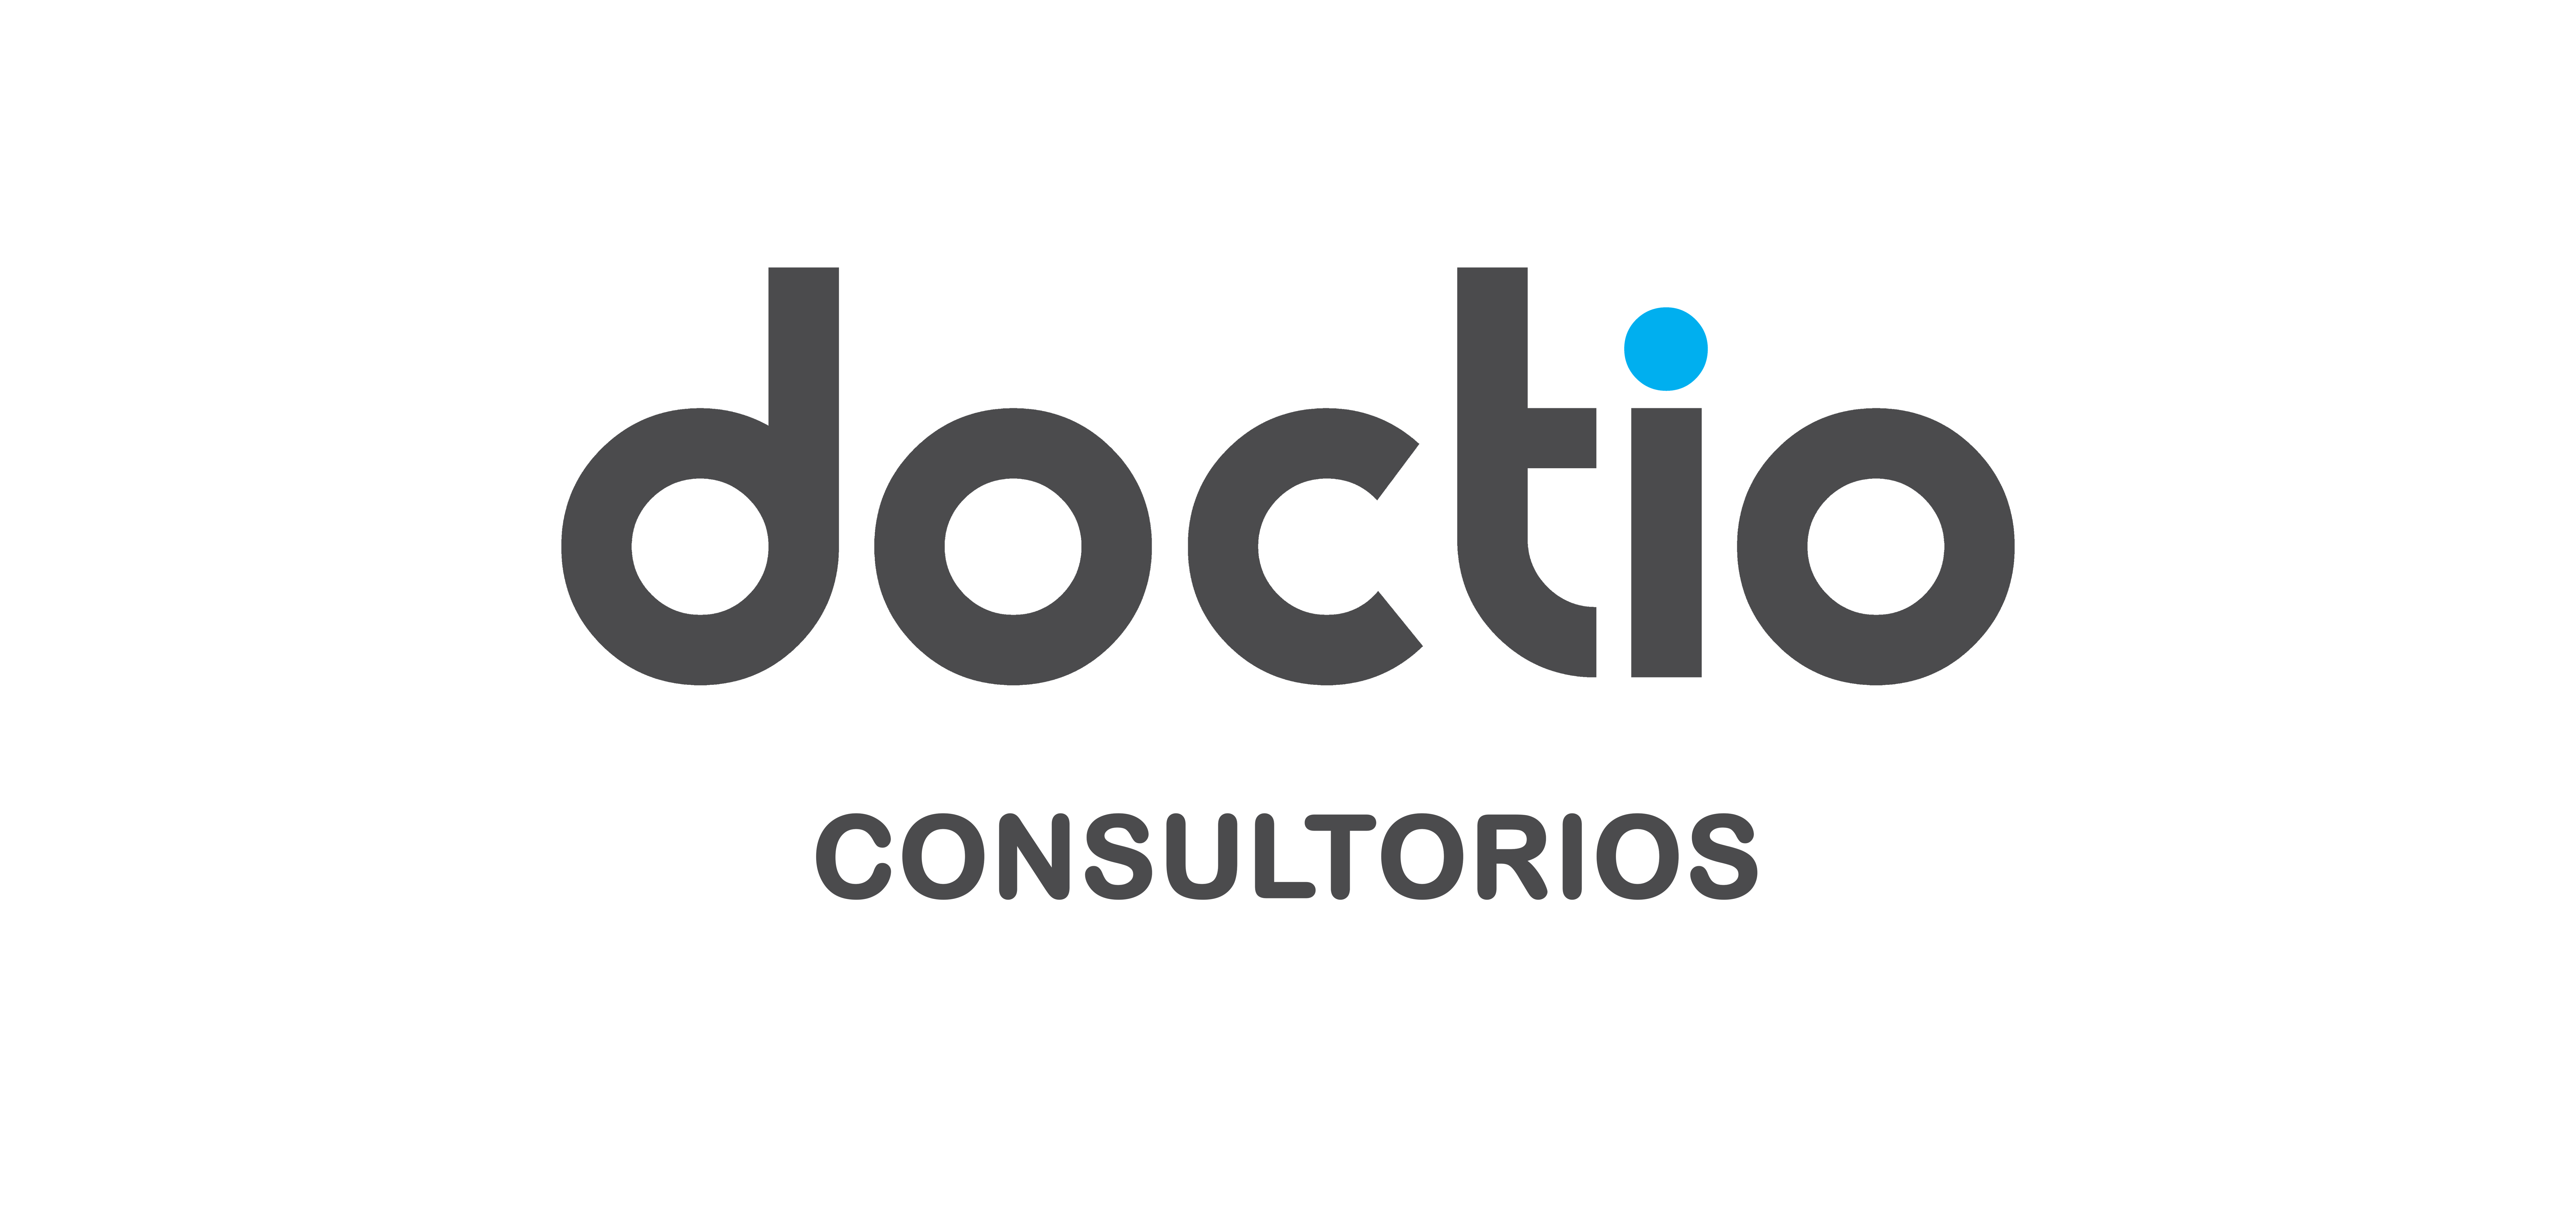 Doctio consultorios